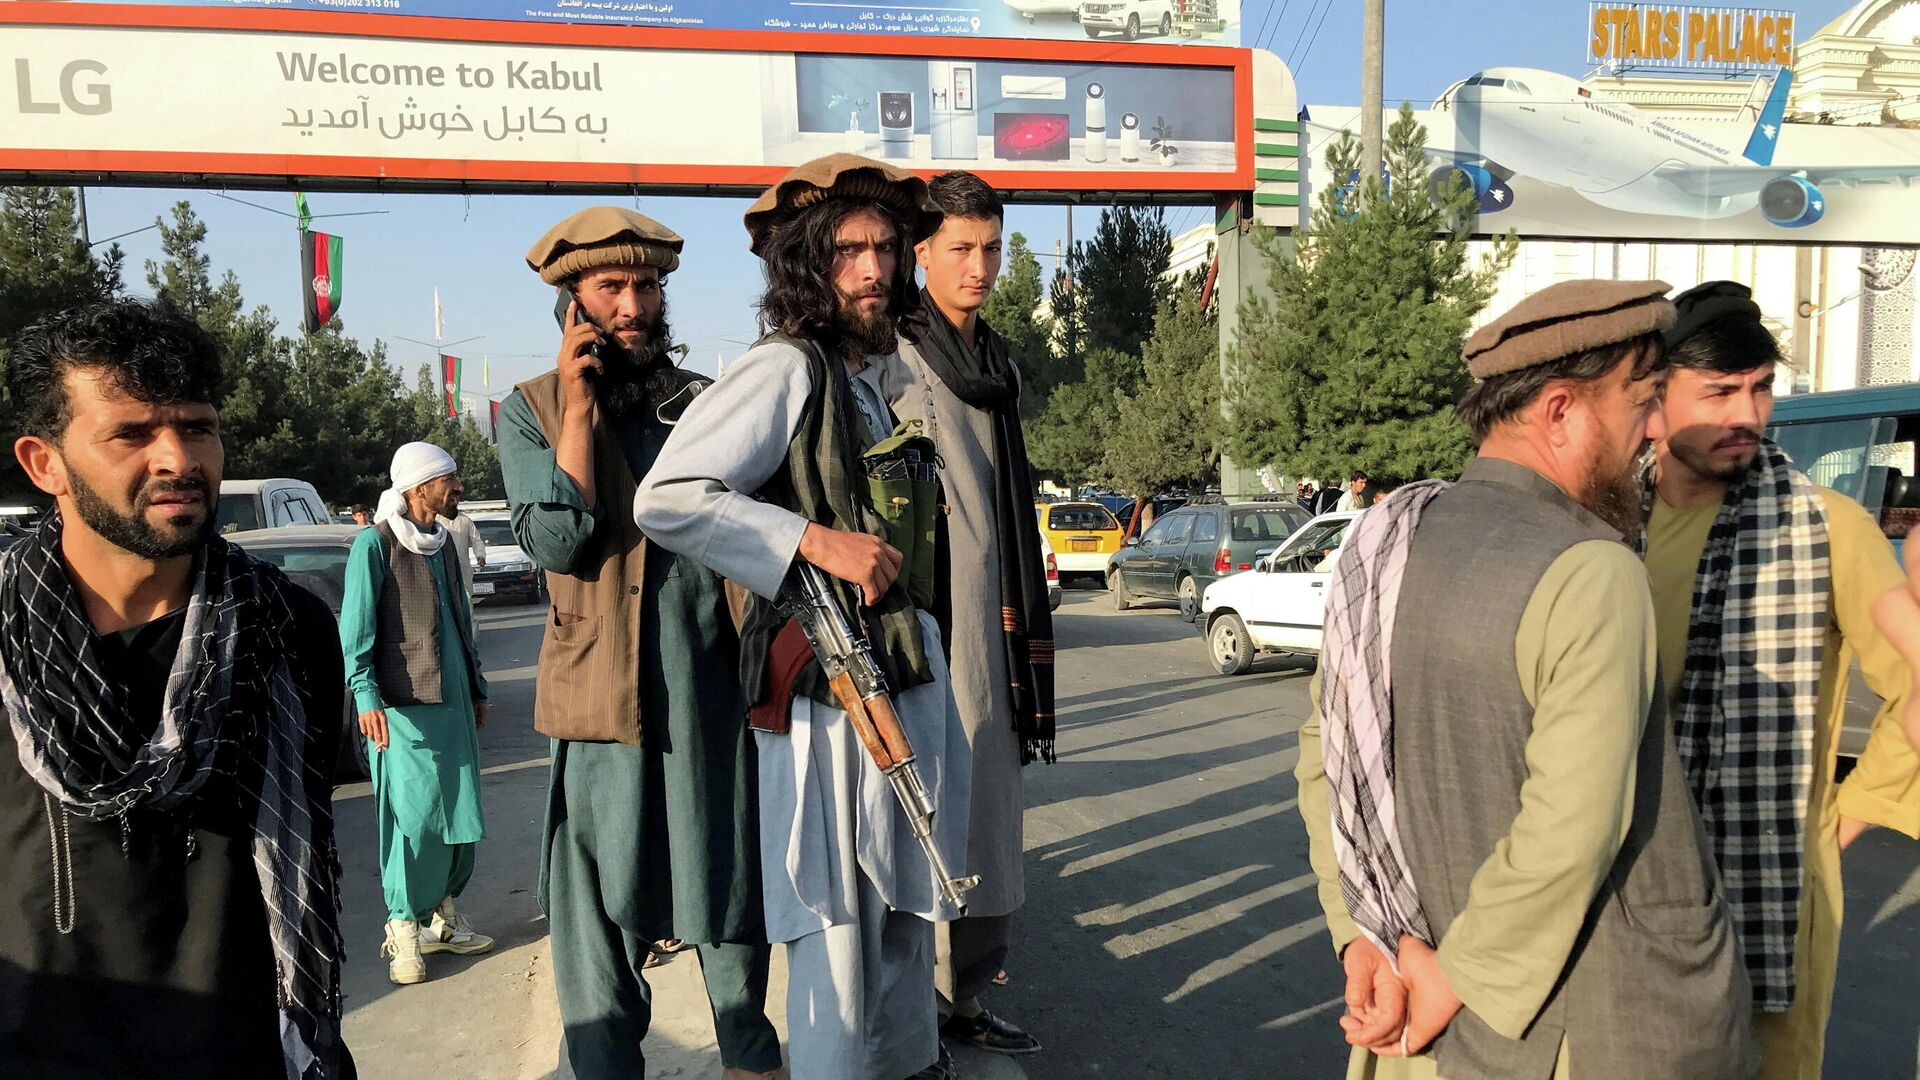 Бойцы Талибана стоят возле международного аэропорта в Кабуле - Sputnik Lietuva, 1920, 16.08.2021